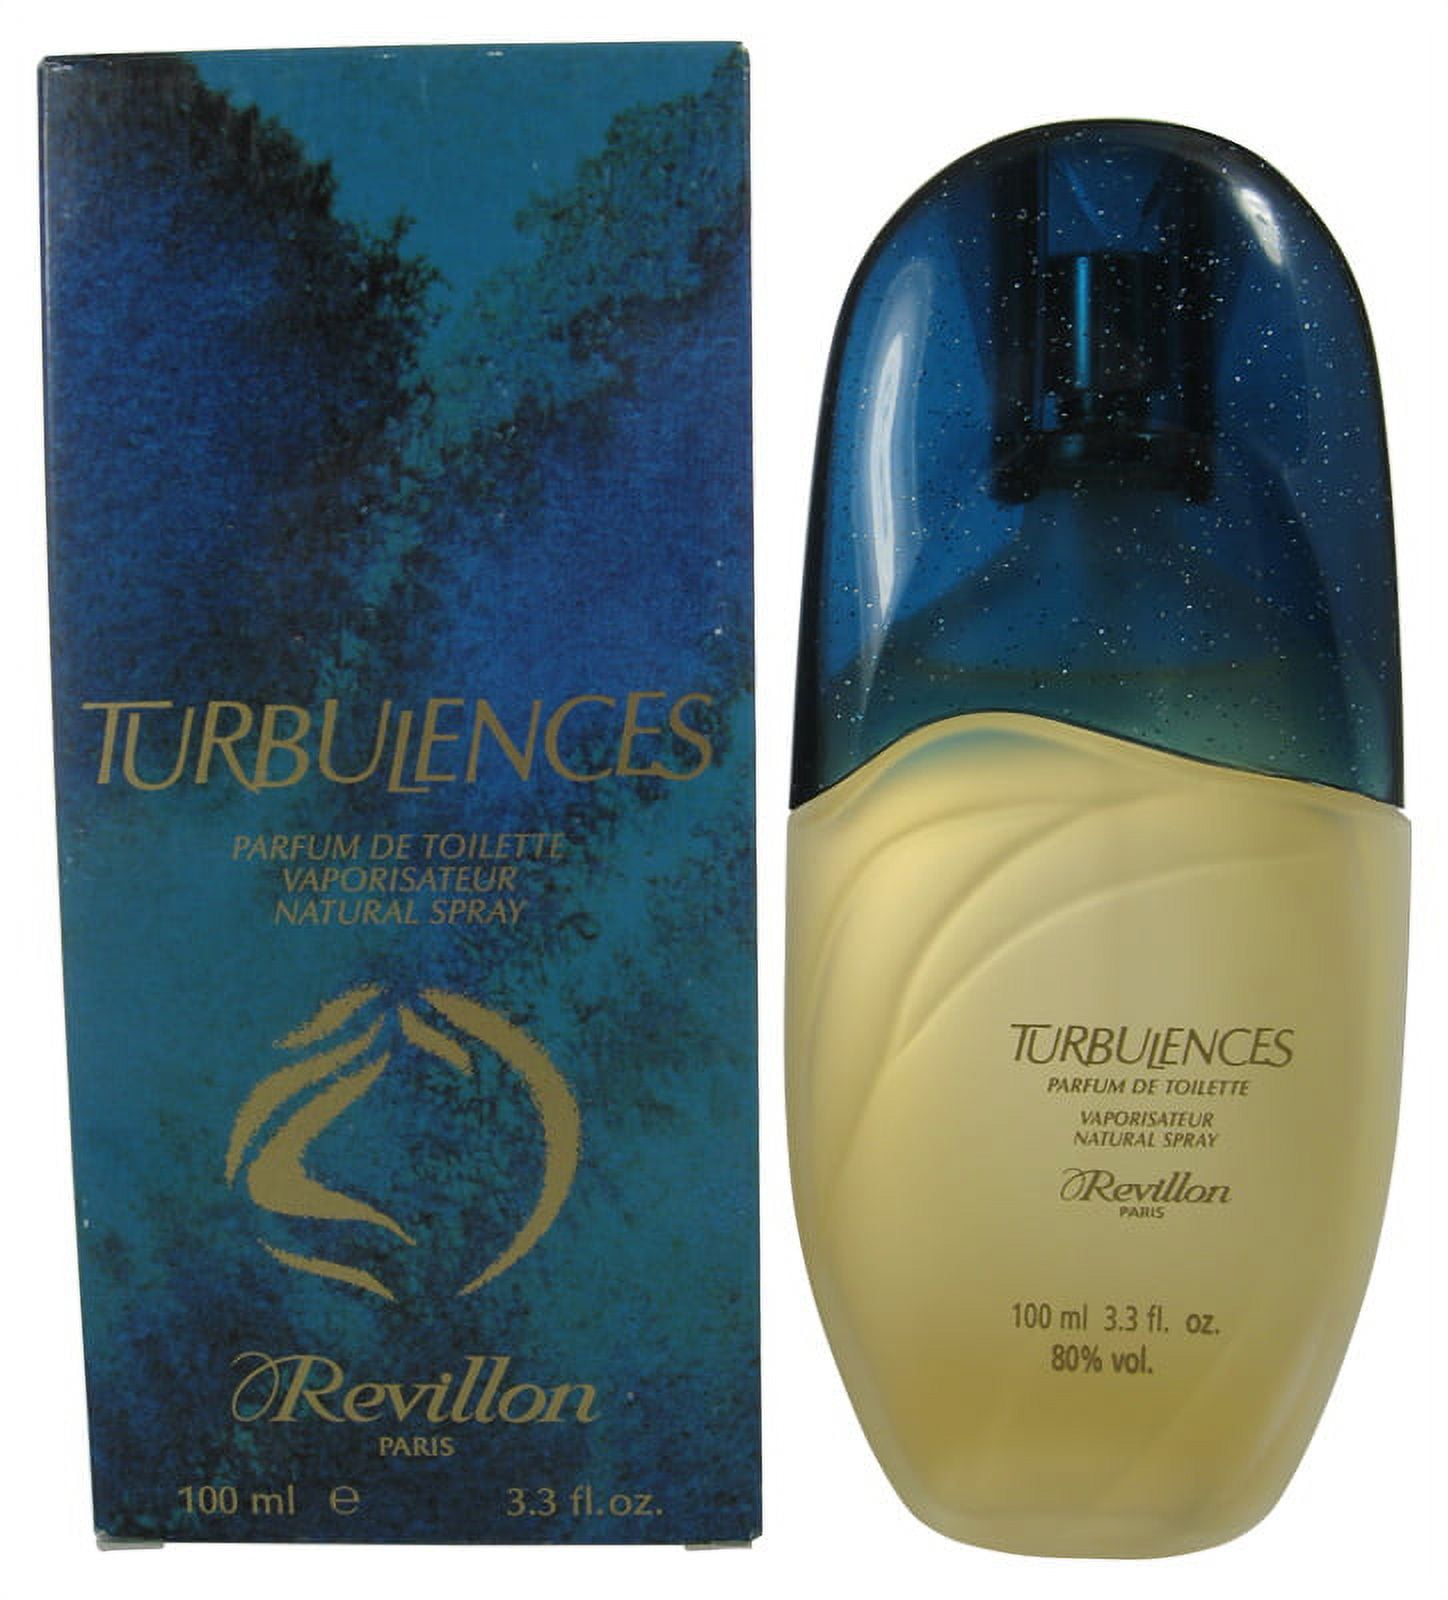 Turbulences by Revillon Parfum De Toilette Spray 25ml : Buy Online